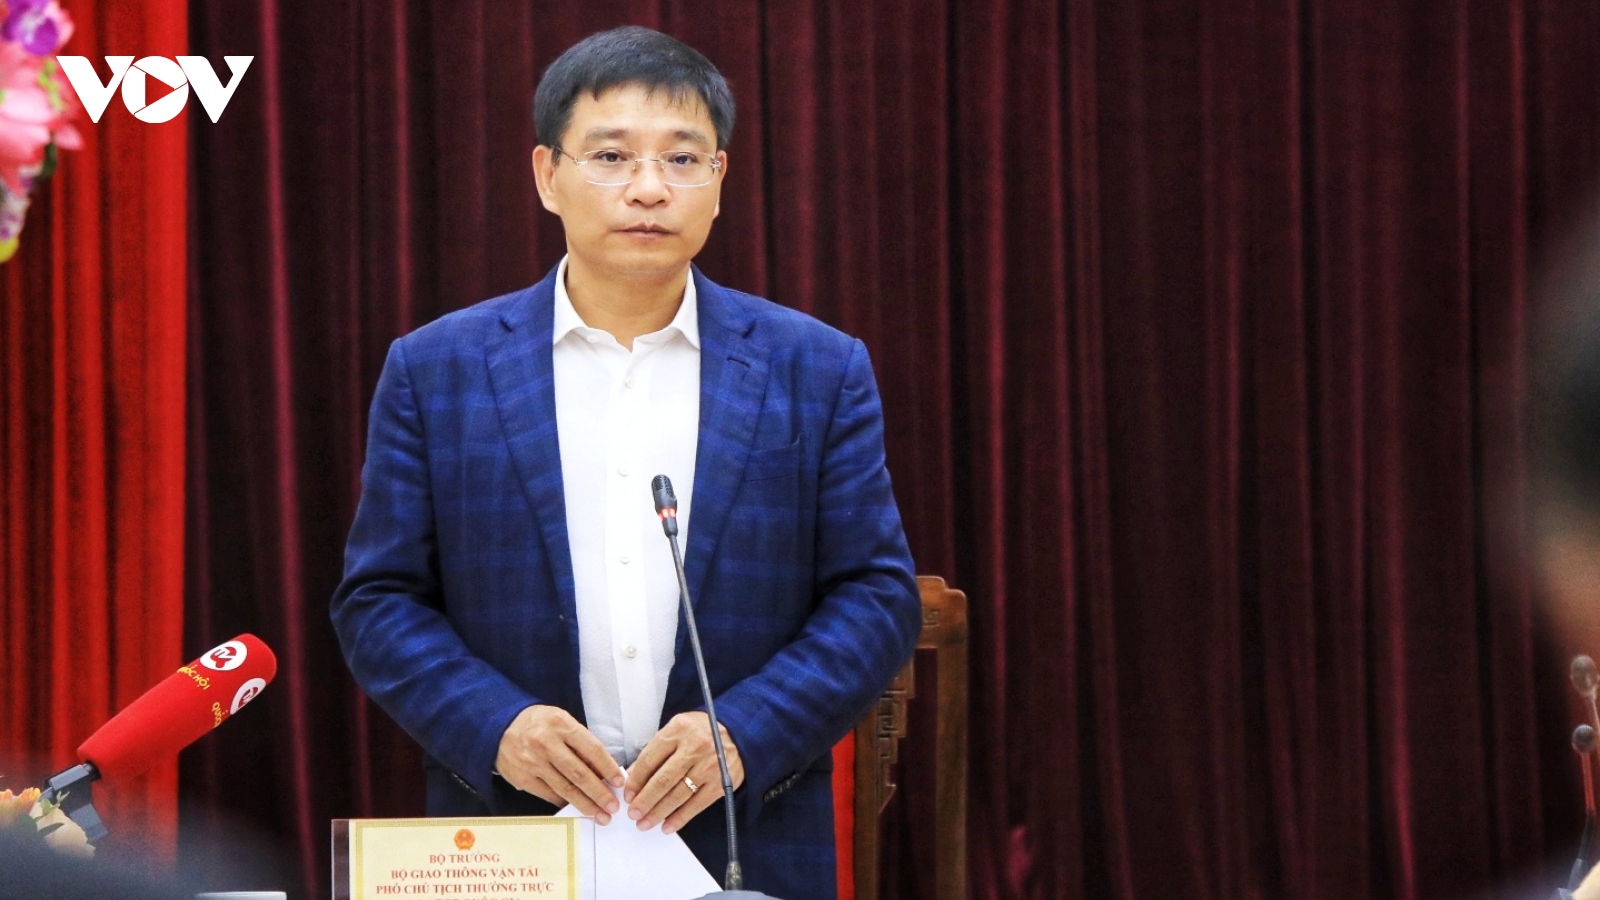 Bộ trưởng Nguyễn Văn Thắng: Phải siết chặt công tác đào tạo, sát hạch lái xe 